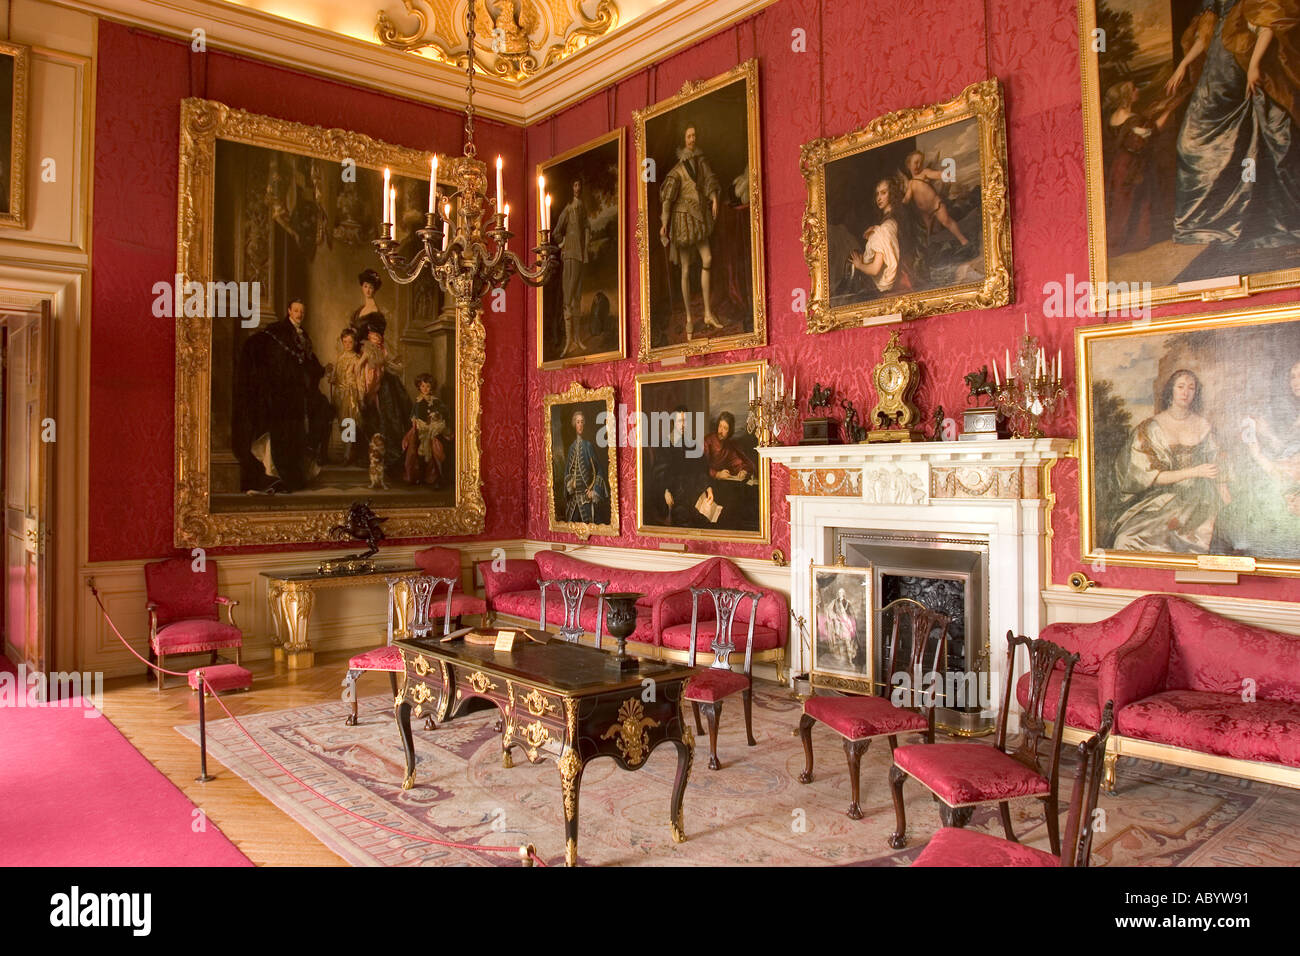 Royaume-uni, Angleterre Oxfordshire Woodstock Blenheim Palace rouge intérieur Salon avec 9e duc de Sargents Banque D'Images